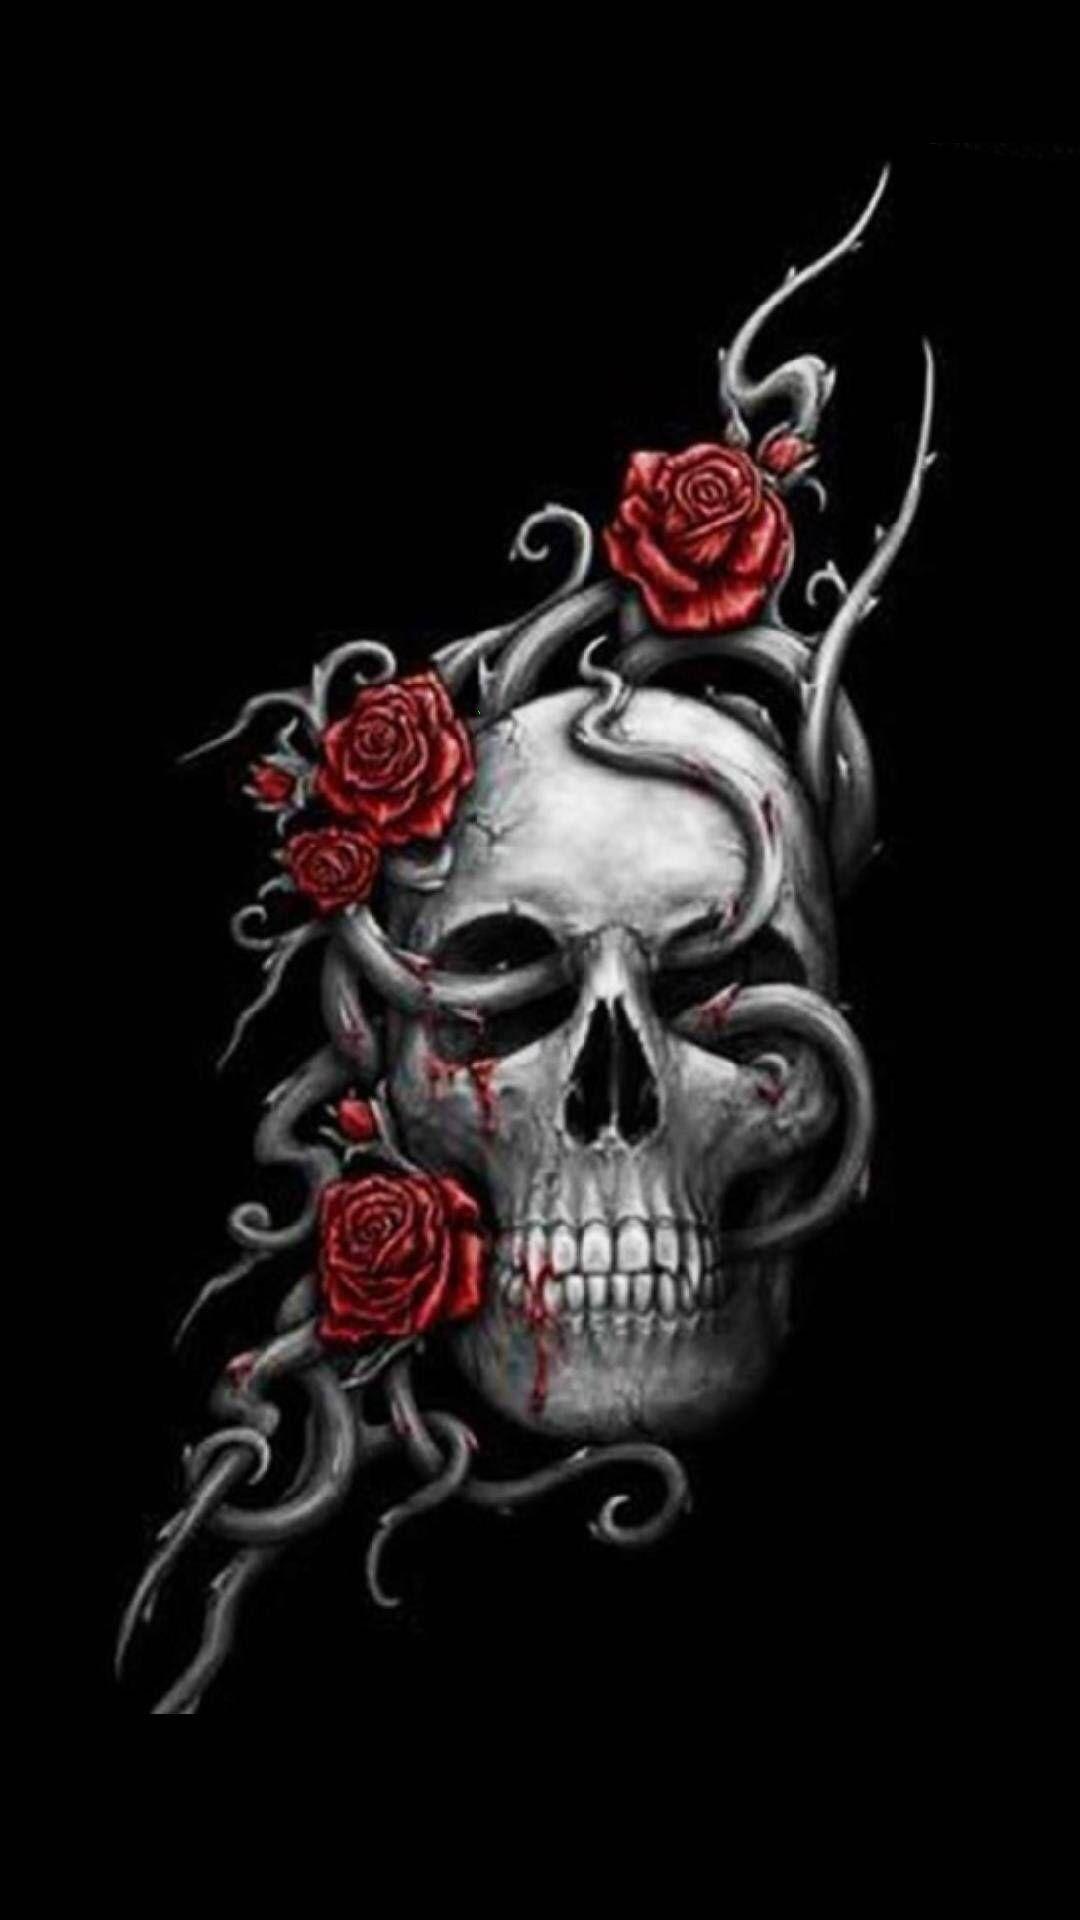 Skull and roses  rose flower purple pink skull fantasy  Skull  artwork Skull wallpaper Black skulls wallpaper